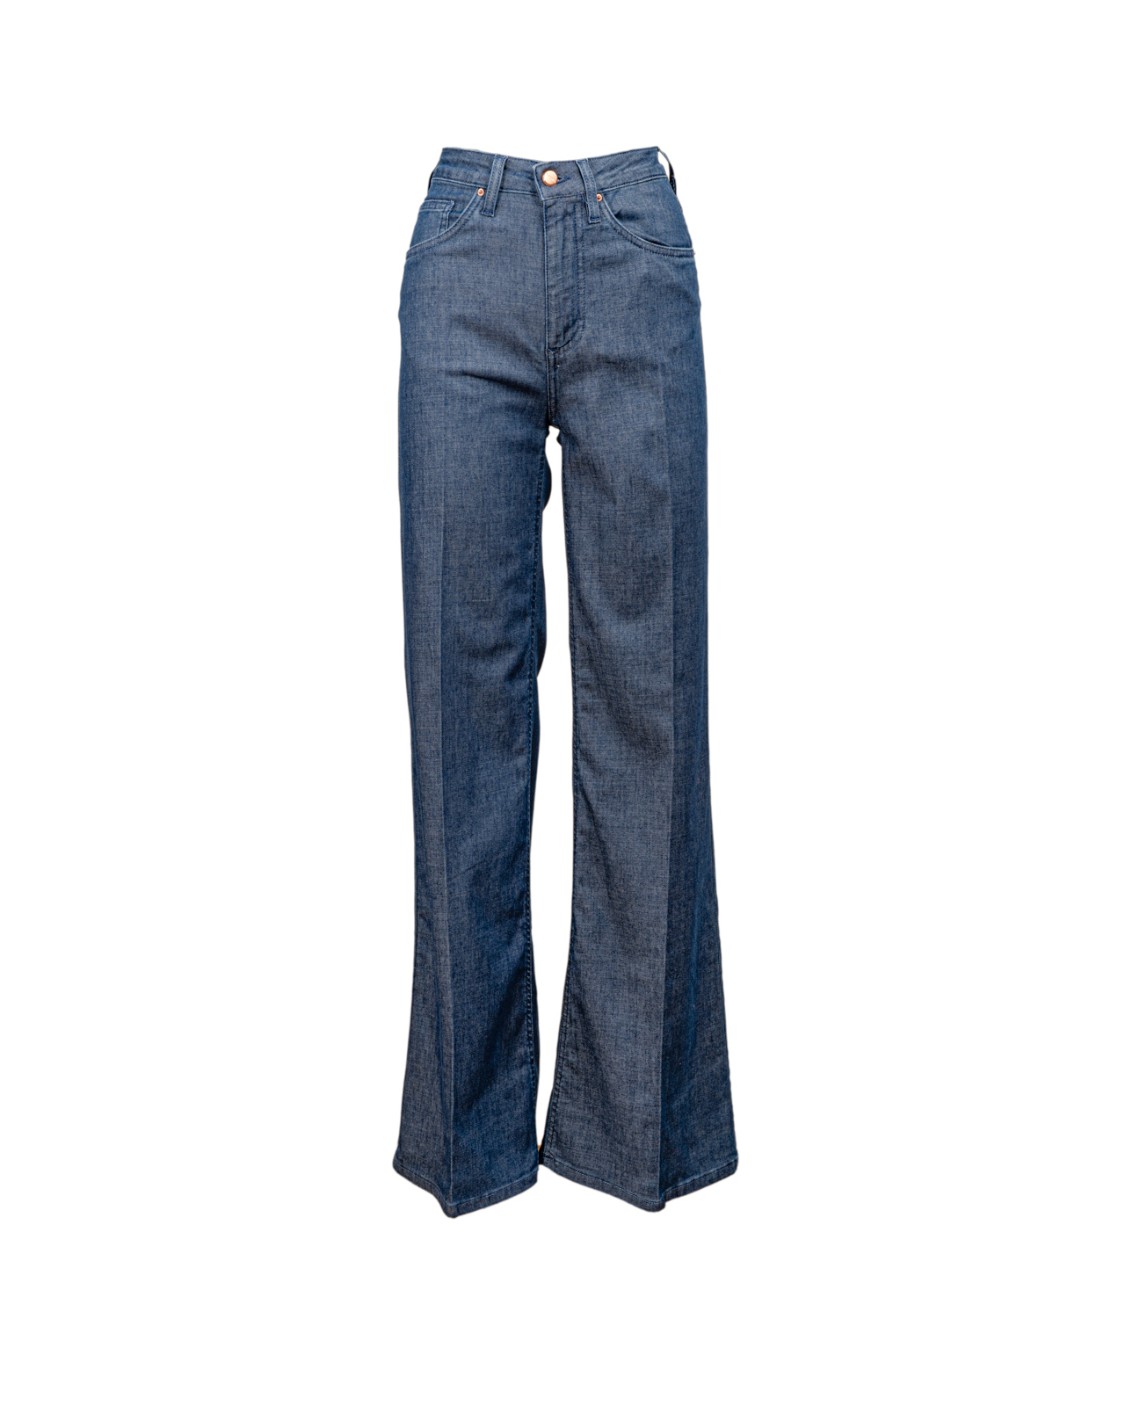 shop DON THE FULLER  Jeans: Don The Fuller jeans "West" a zampa.
Elasticizzato.
Modello 5 tasche.
Passanti per cintura.
Vita alta.
Chiusura con zip e bottone.
Composizione: 76% cotone 15% lyocell 6% elastomultiester 3% elastan.
Made in Italy.. WEST DTFDOM SS765-B number 6999126